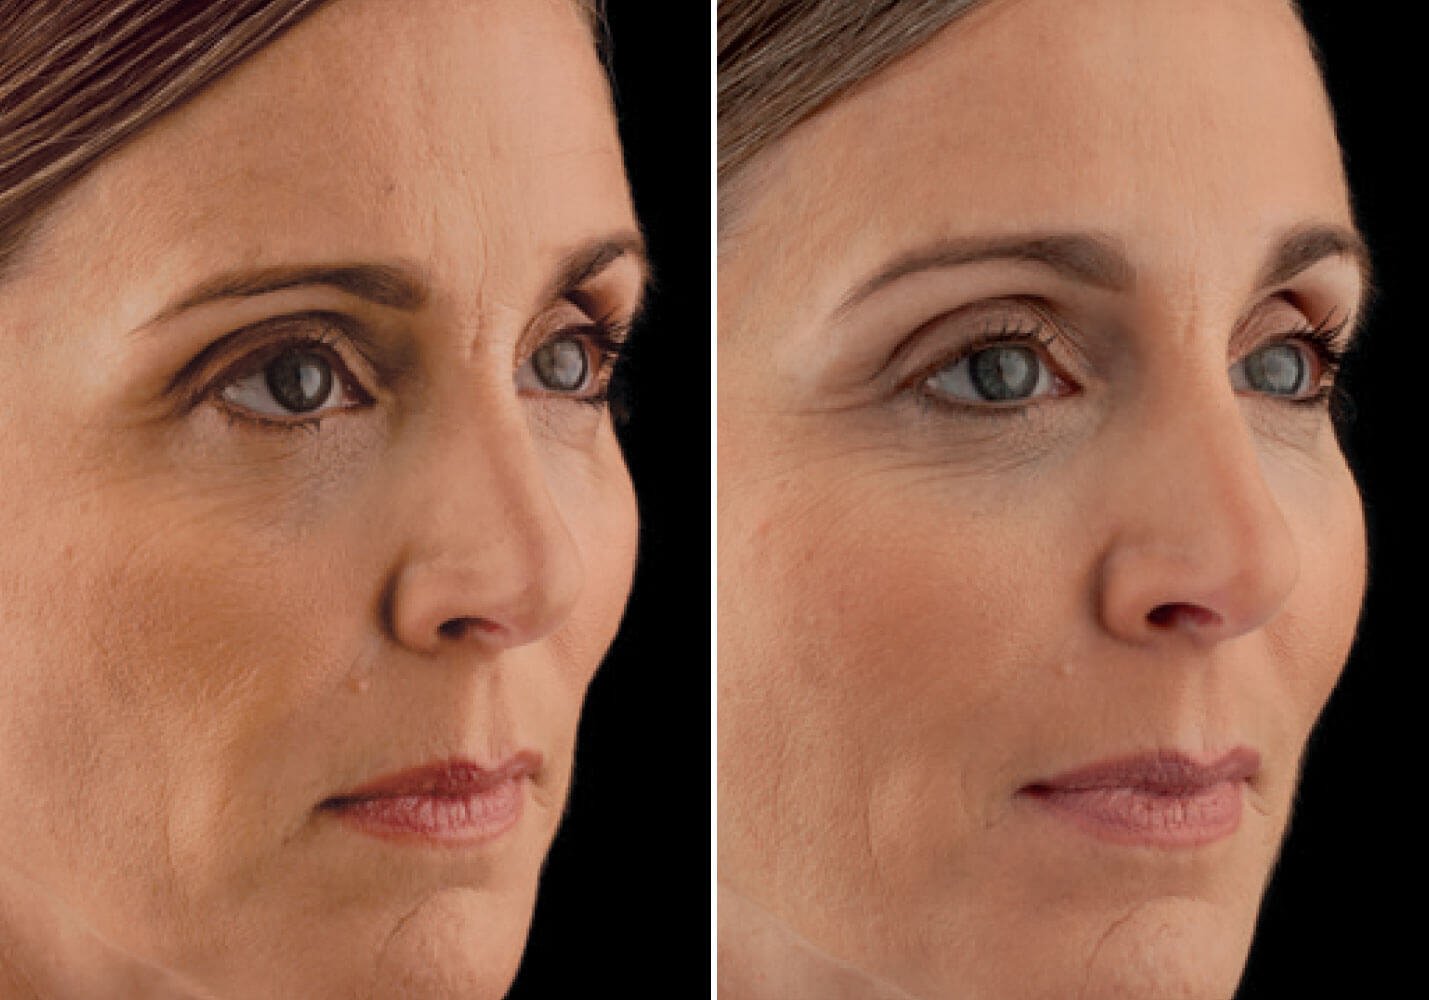 Филлер радиесс для лица эффект до и после фото